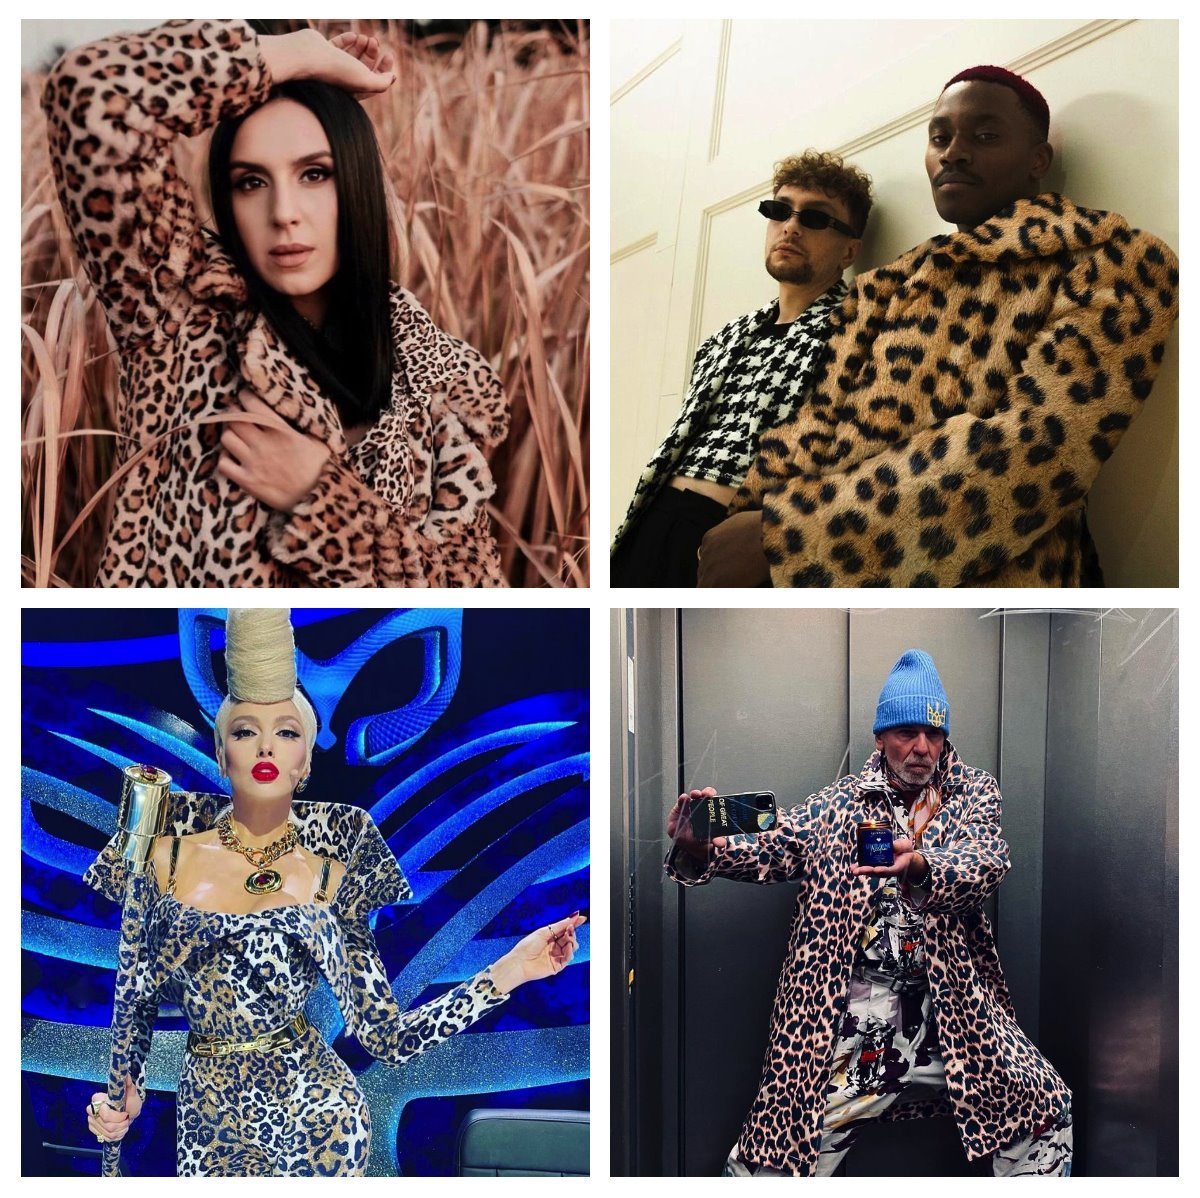 Celebrities wearing leopard skin clothing